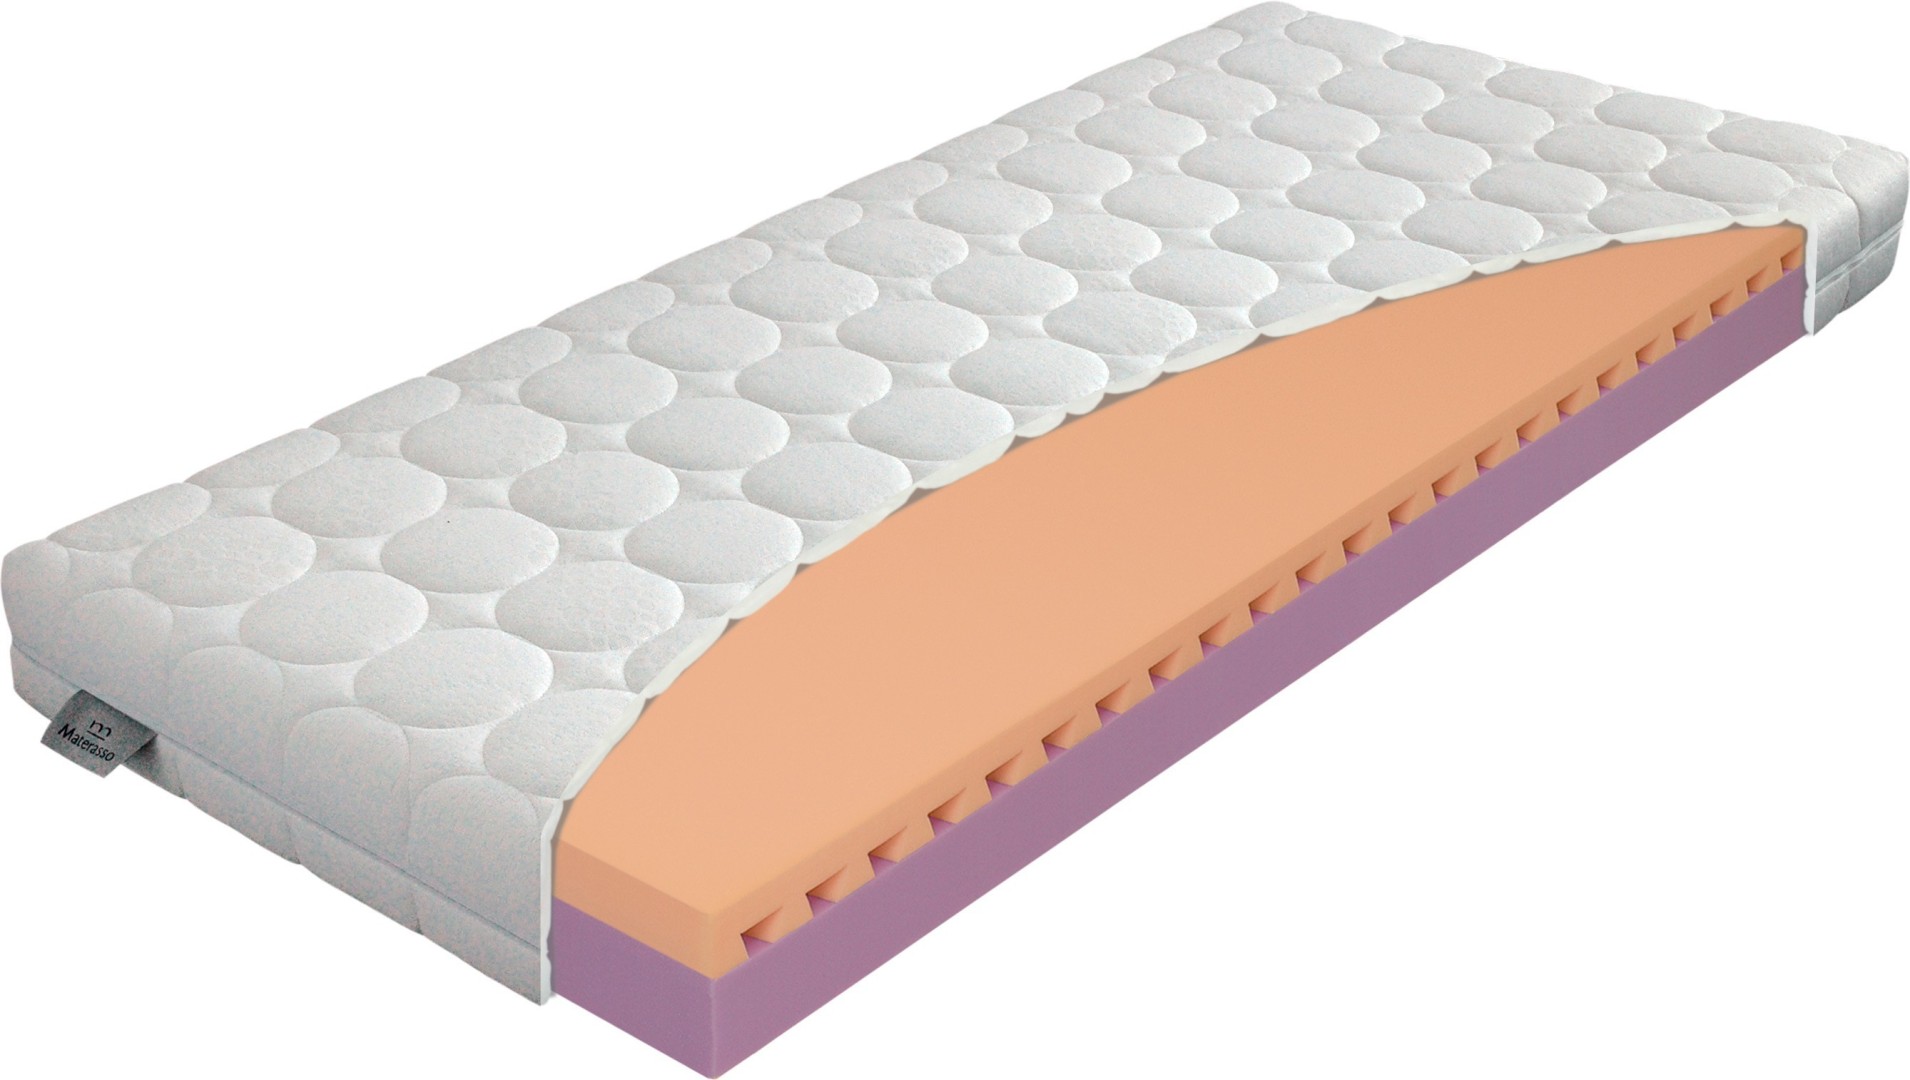 Materasso JUNIOR relax 20 cm - matrace pro zdravý spánek dětí 80 x 200 cm, snímatelný potah